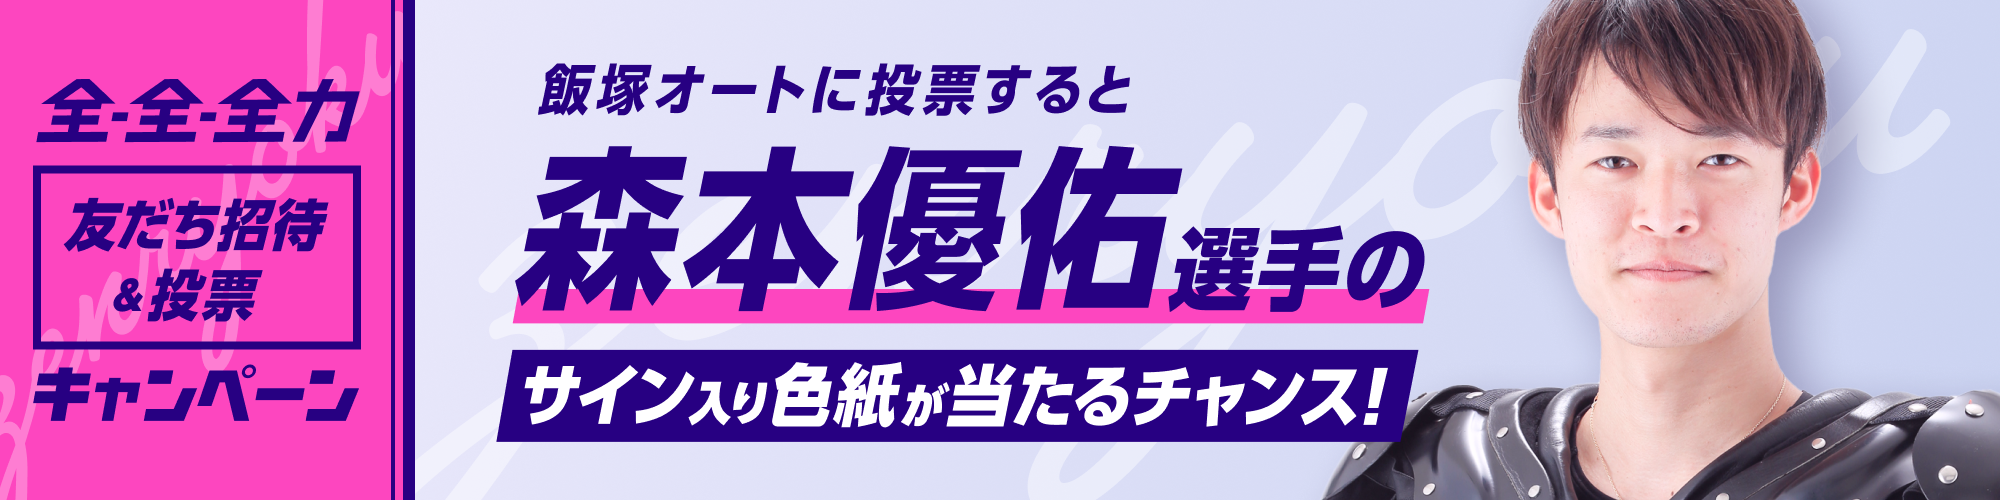 【荒尾・森本・鐘ヶ江ら3選手のサイン入り色紙が当たる！】投票キャンペーン